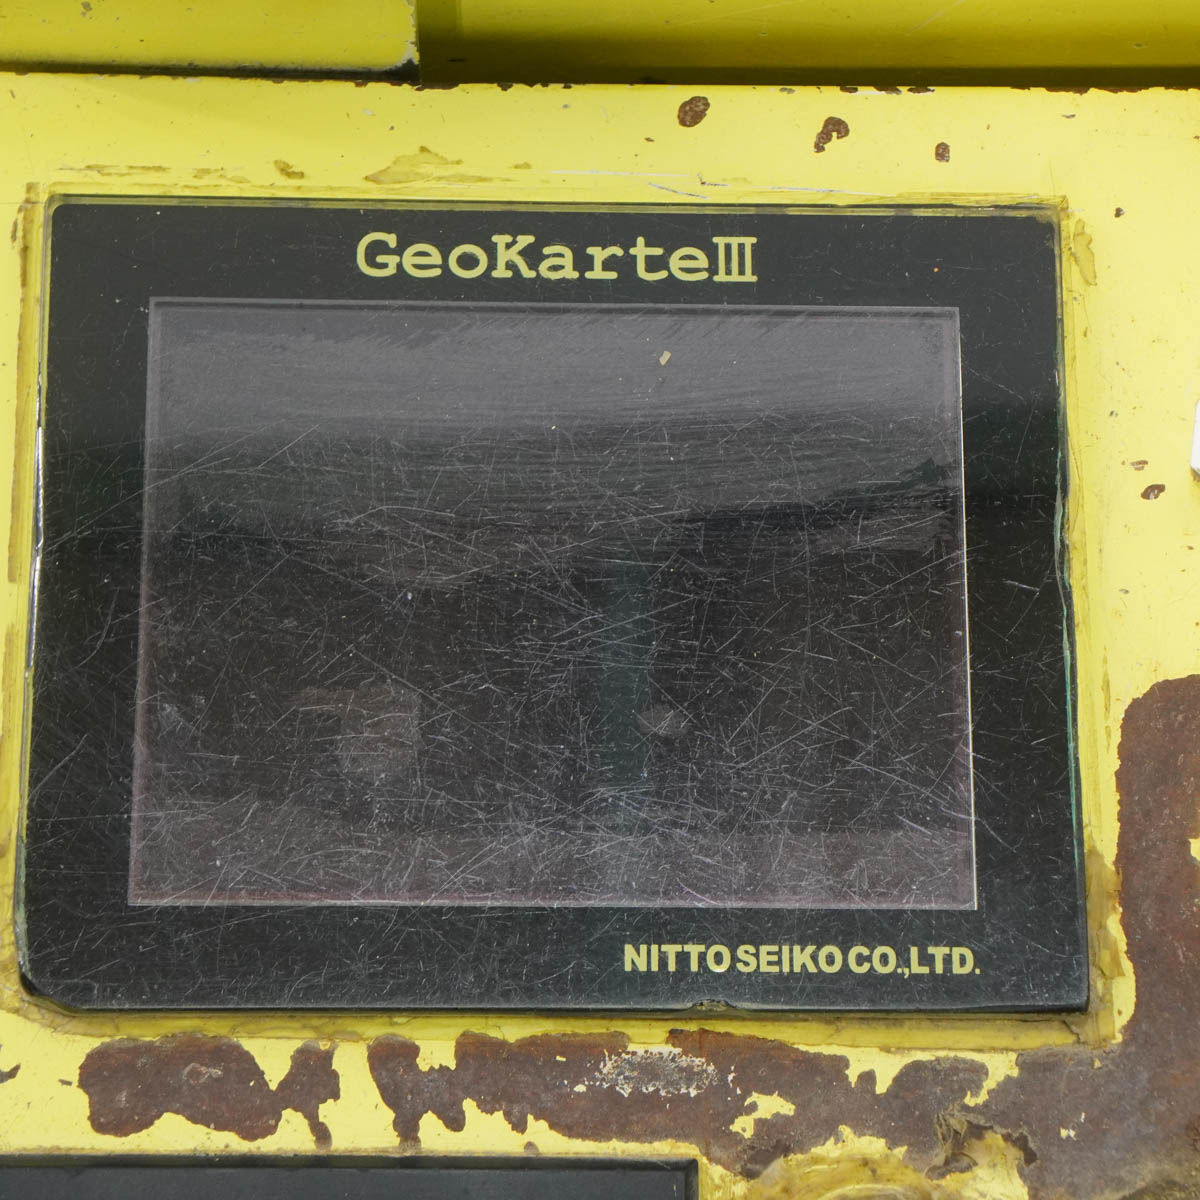 最も完璧な DIRWINGSショップ JB USED 現状販売 NITTO SEIKO Geokarte III ジオカルテ3 自動貫入試験機  地盤調査機 ST03918-0004